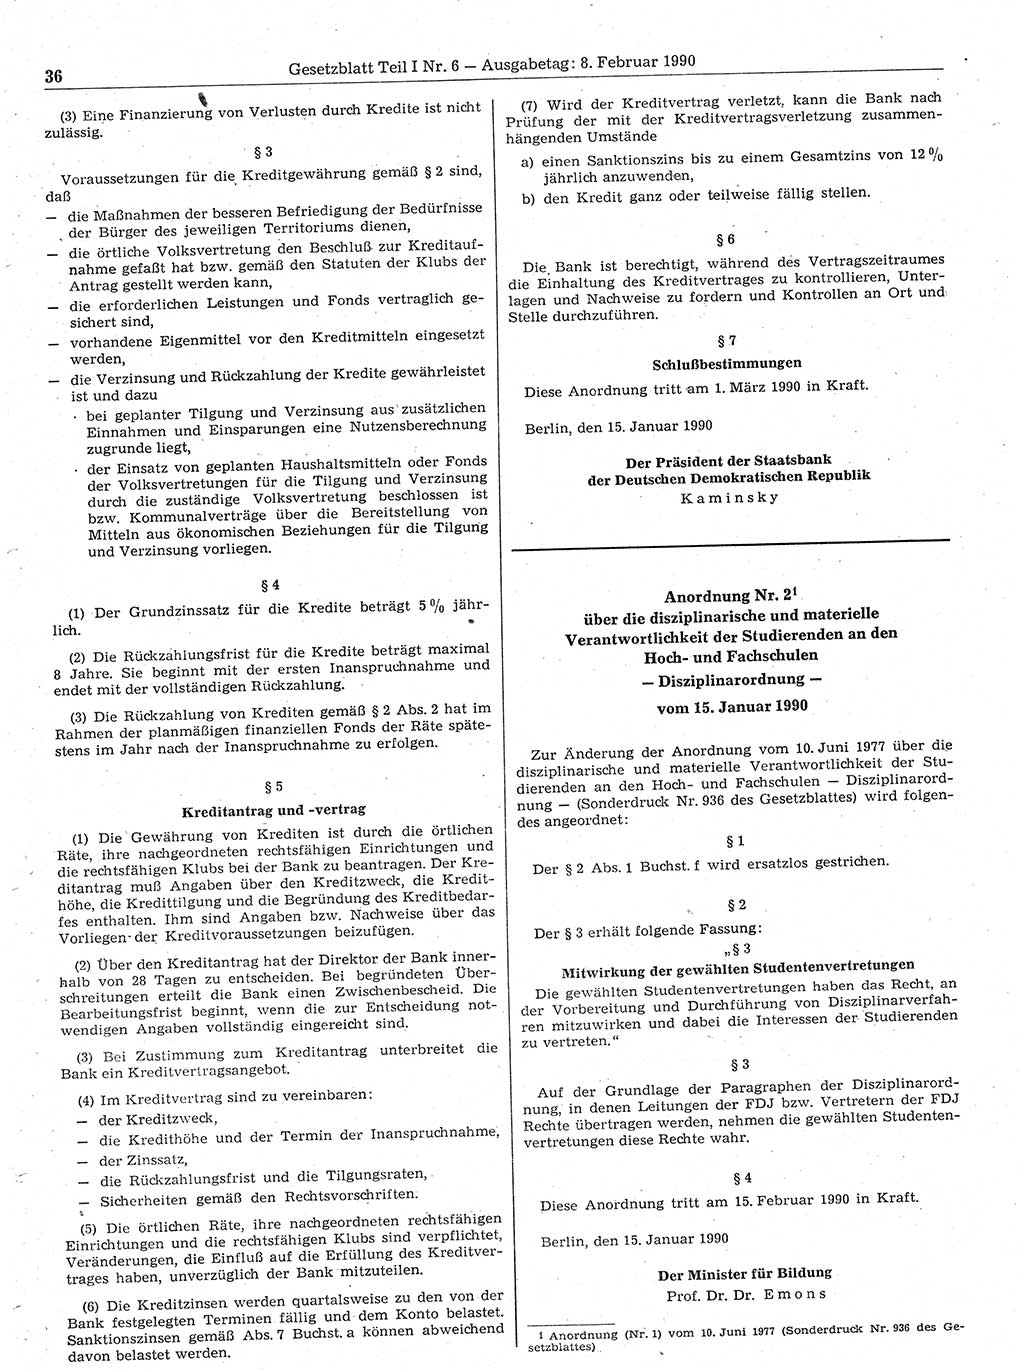 Gesetzblatt (GBl.) der Deutschen Demokratischen Republik (DDR) Teil Ⅰ 1990, Seite 36 (GBl. DDR Ⅰ 1990, S. 36)